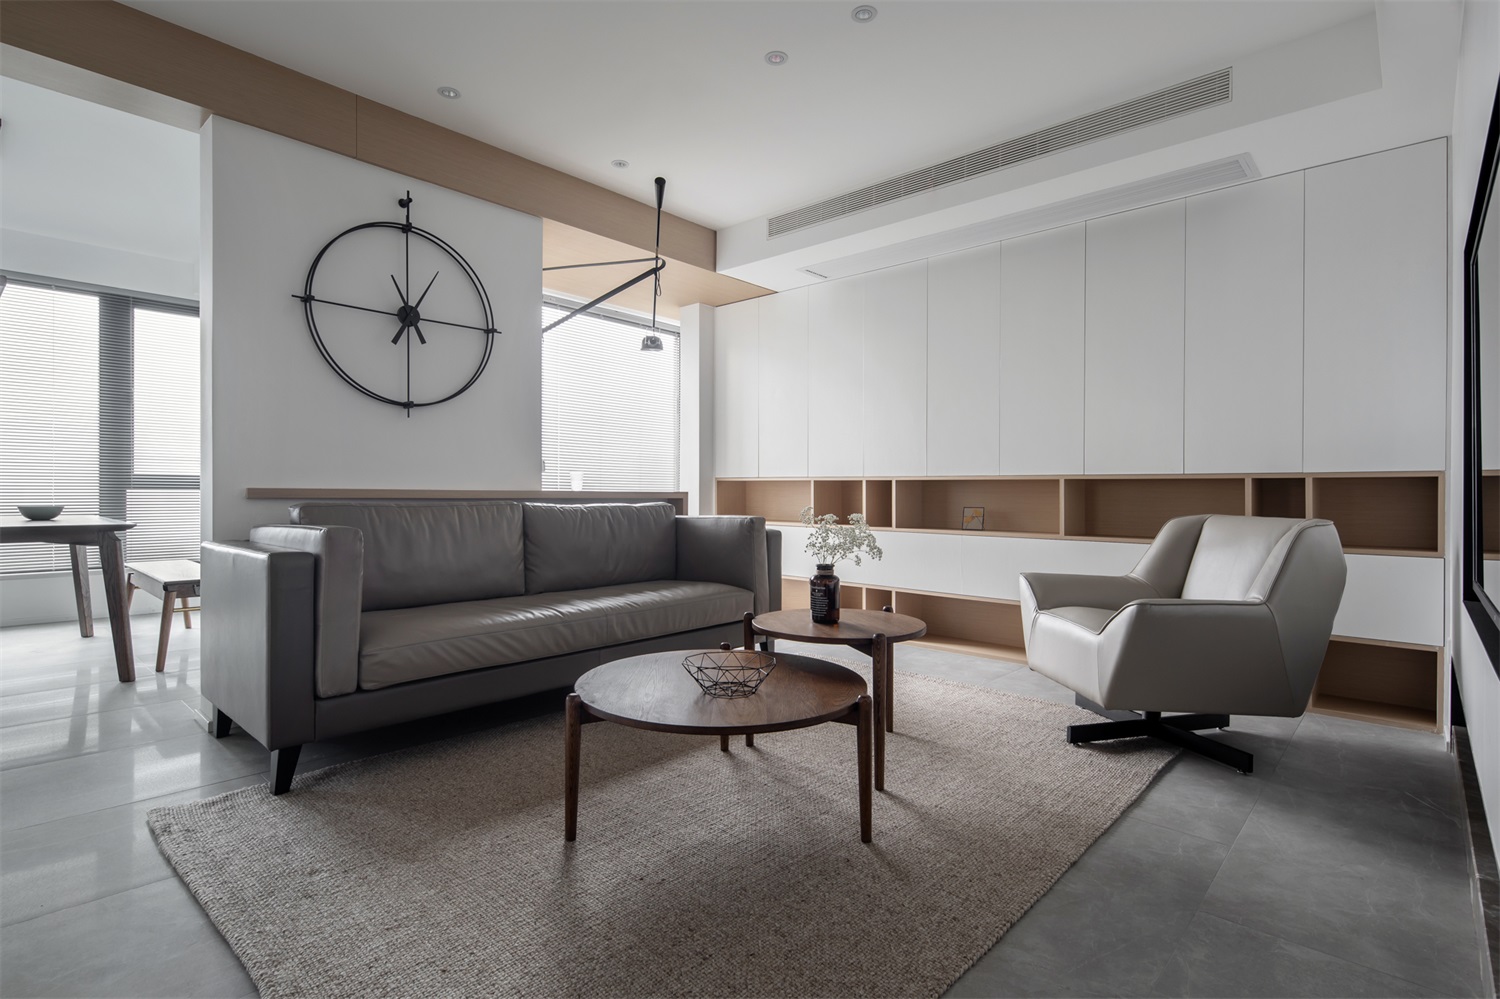 看似简单的客厅设计，却具备了当代设计的美感和深度，白色与木色在不经意间触摸心底。